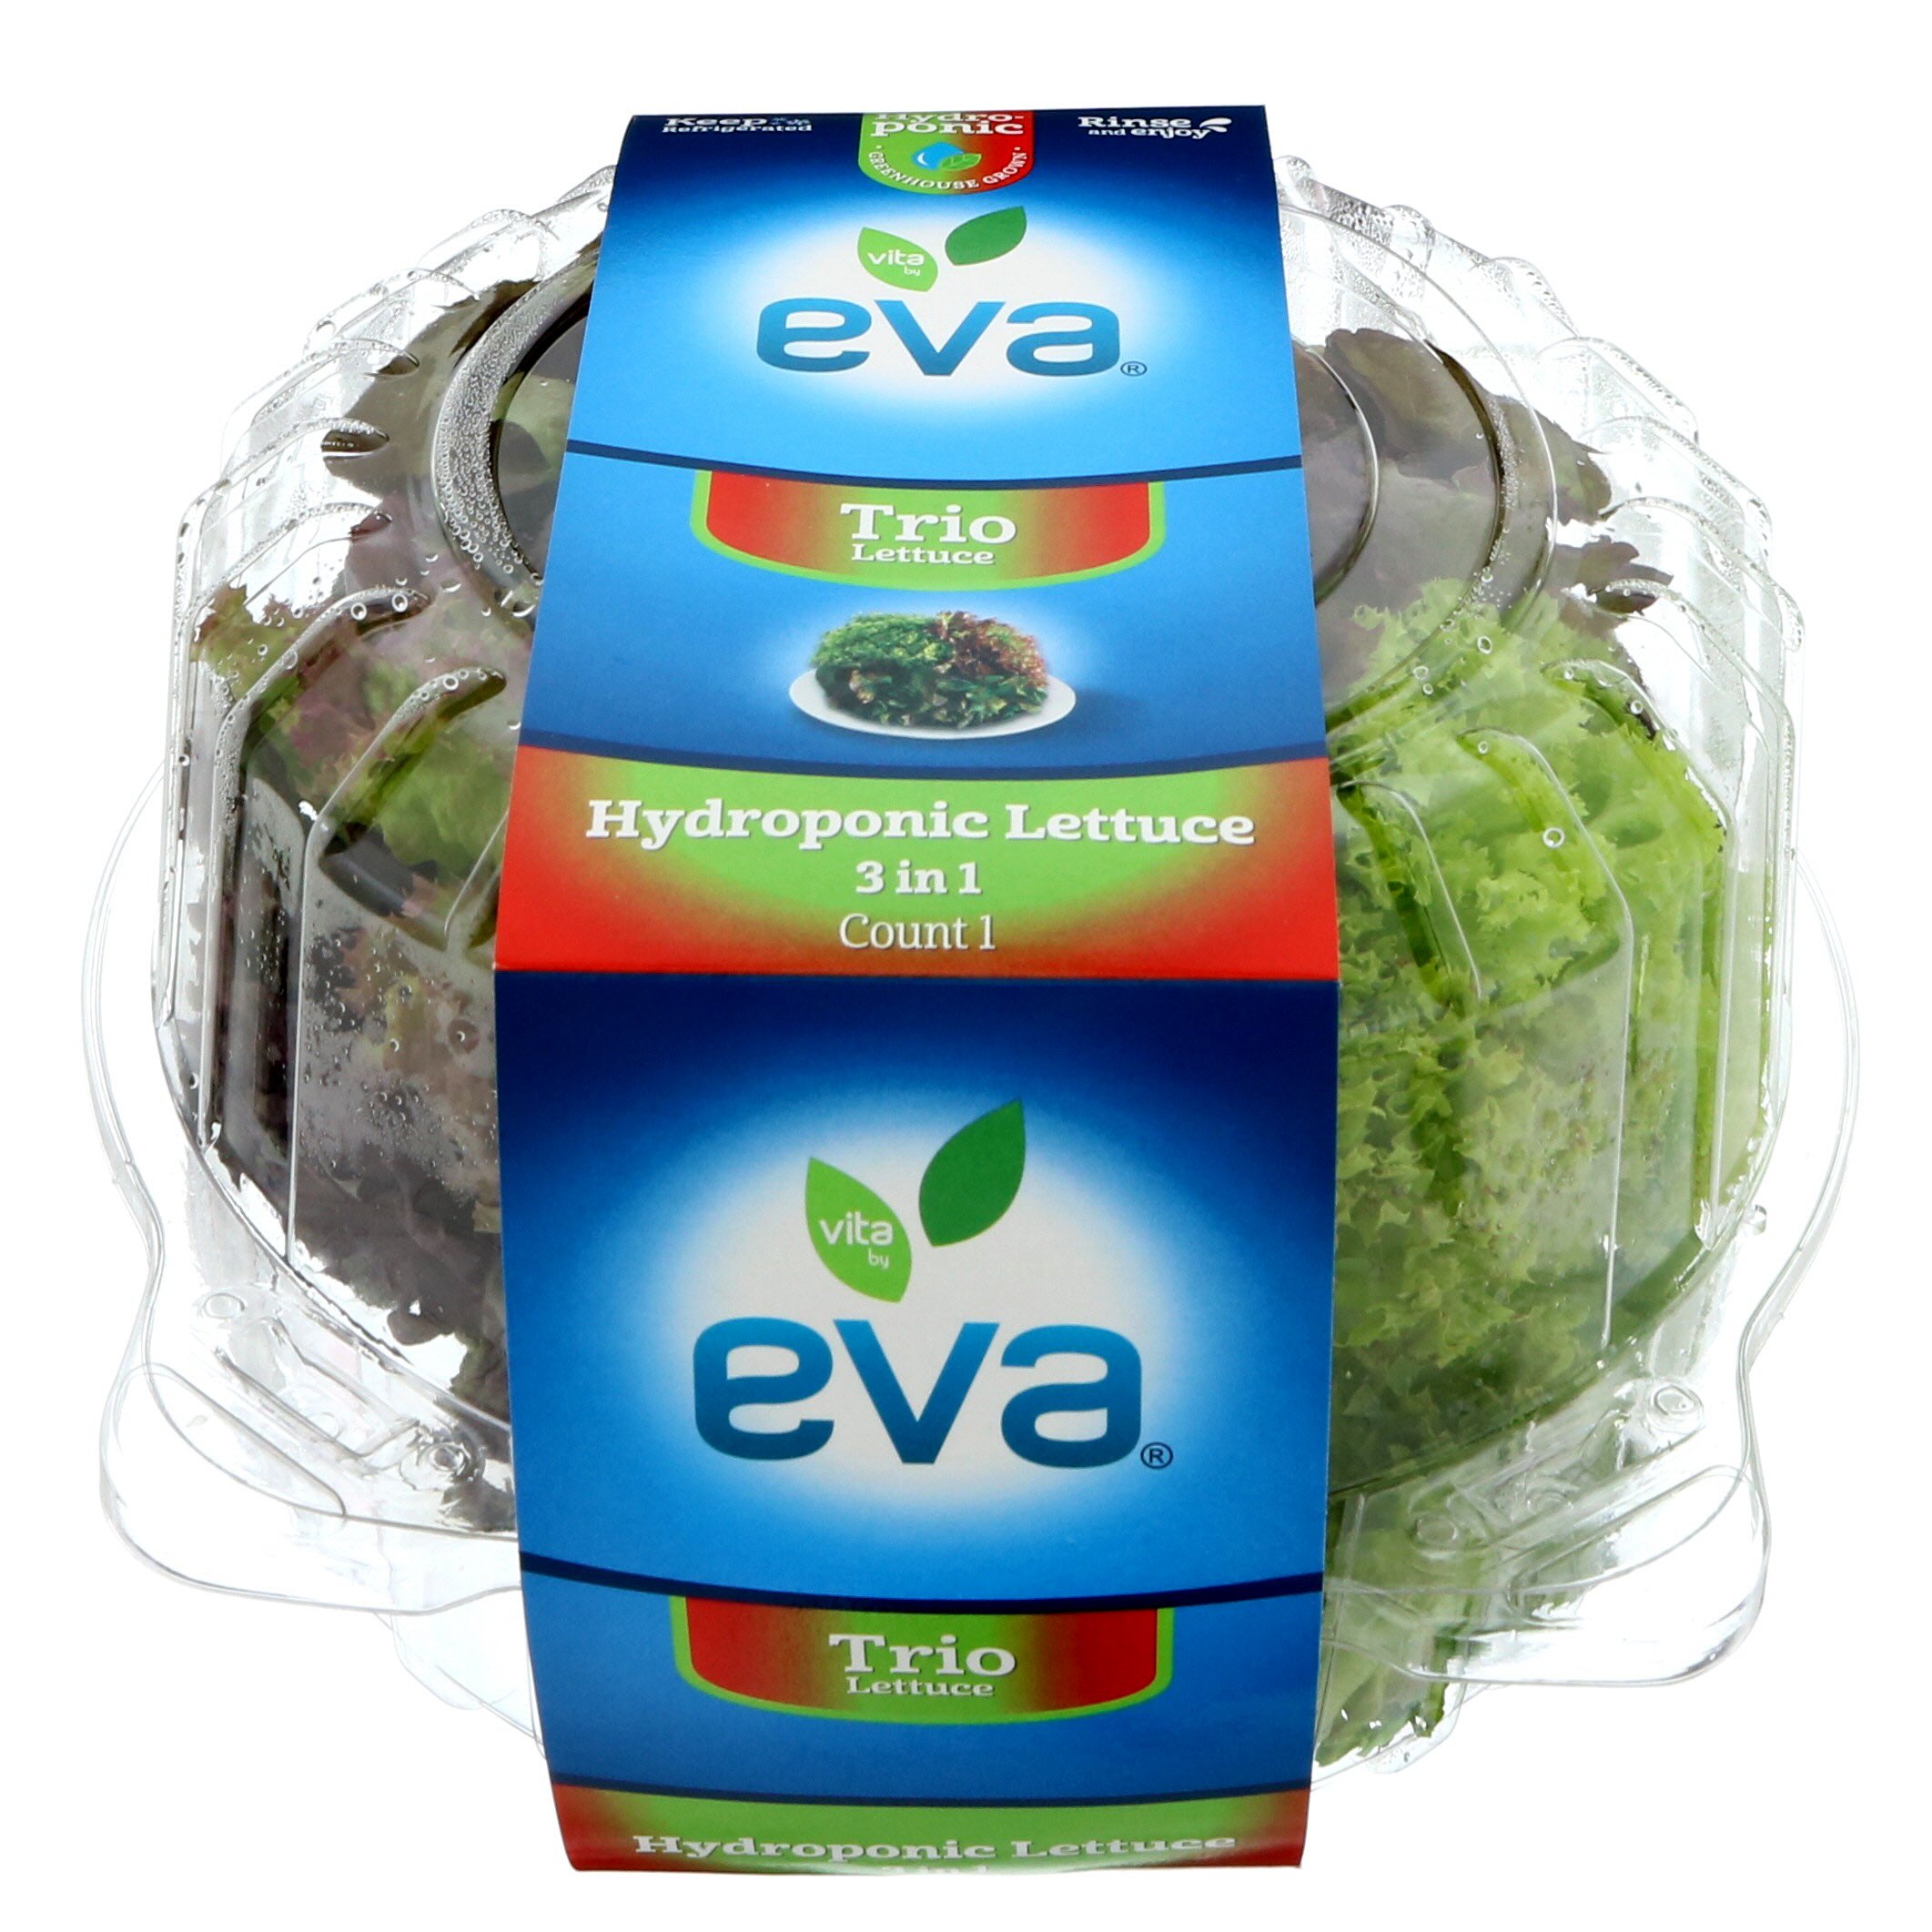 Eva Trio Hydroponic Lettuce - Shop Lettuce & Leafy Greens at H-E-B